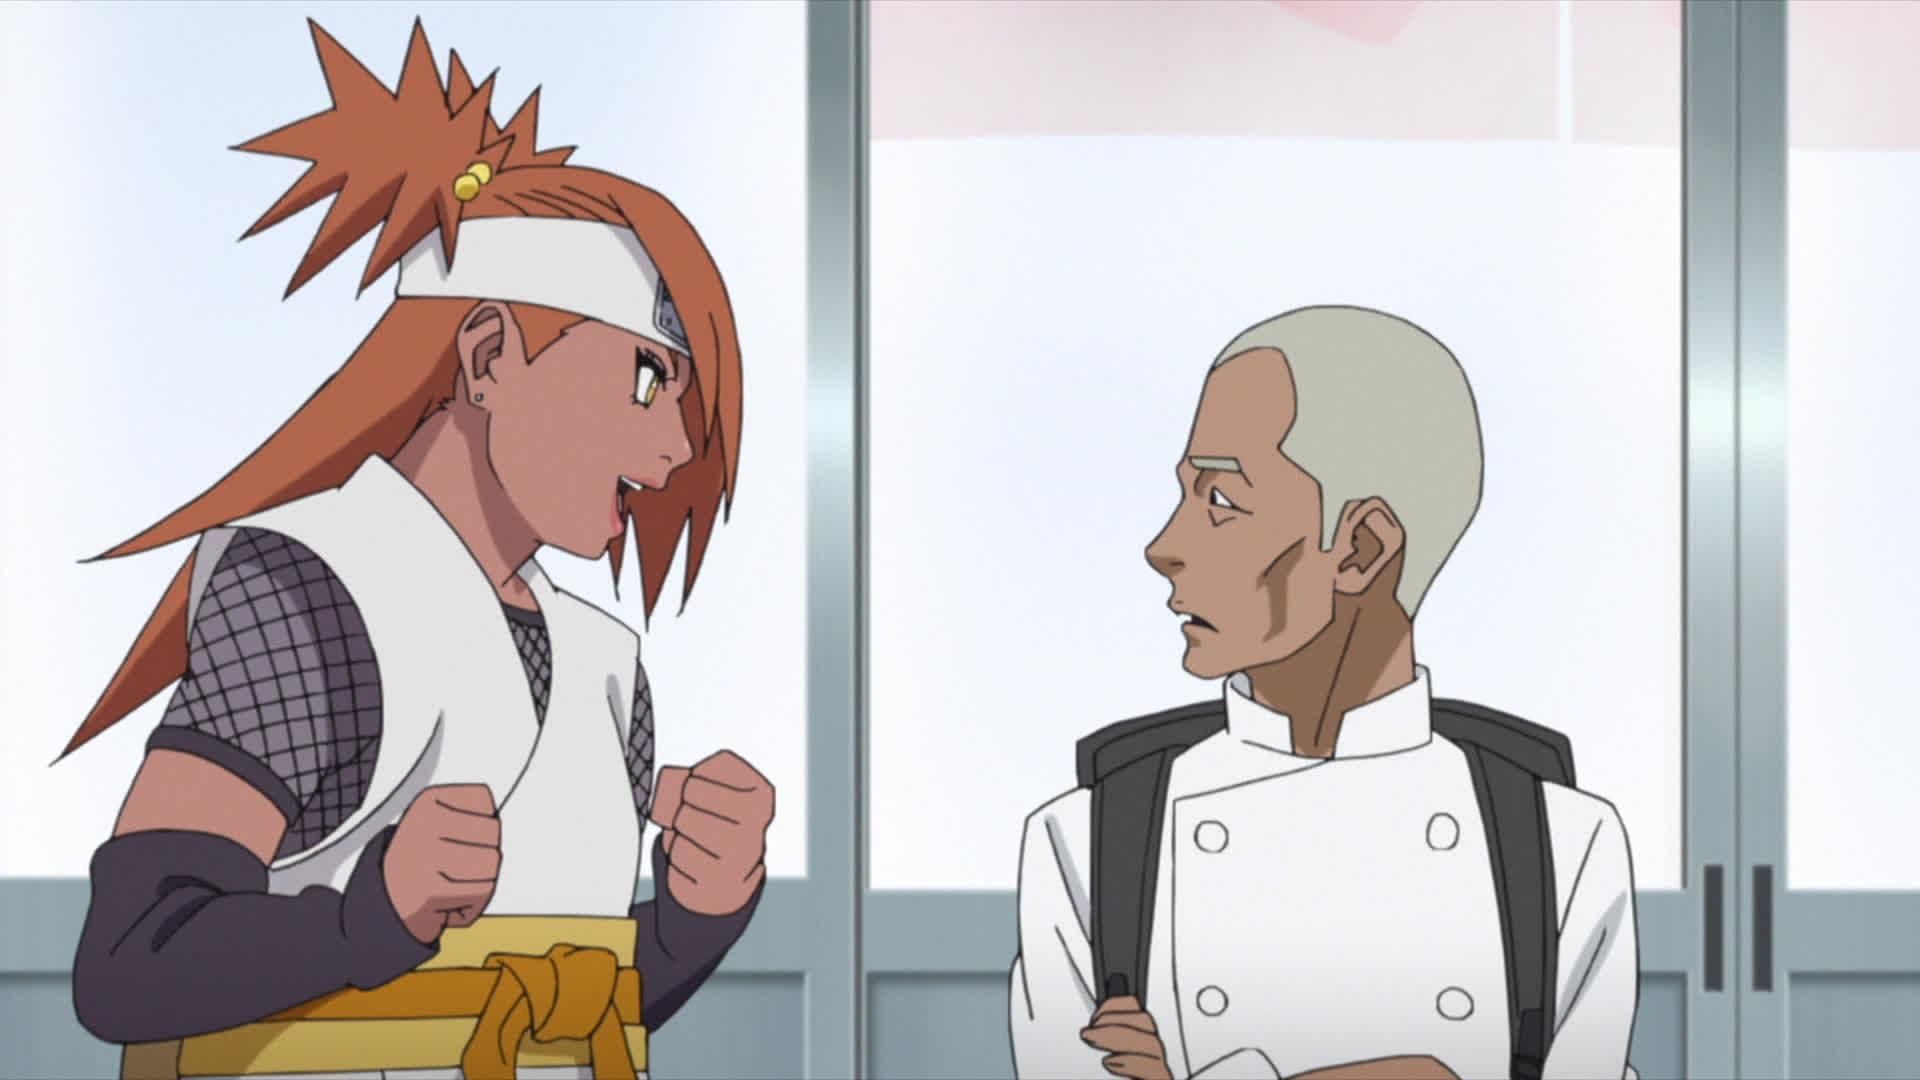 Chocho and Inojin will become chefs for a day in Boruto Episode 256 (Image via Masashi Kishimoto/Shueisha, Viz Media Boruto: Naruto Next Generations)